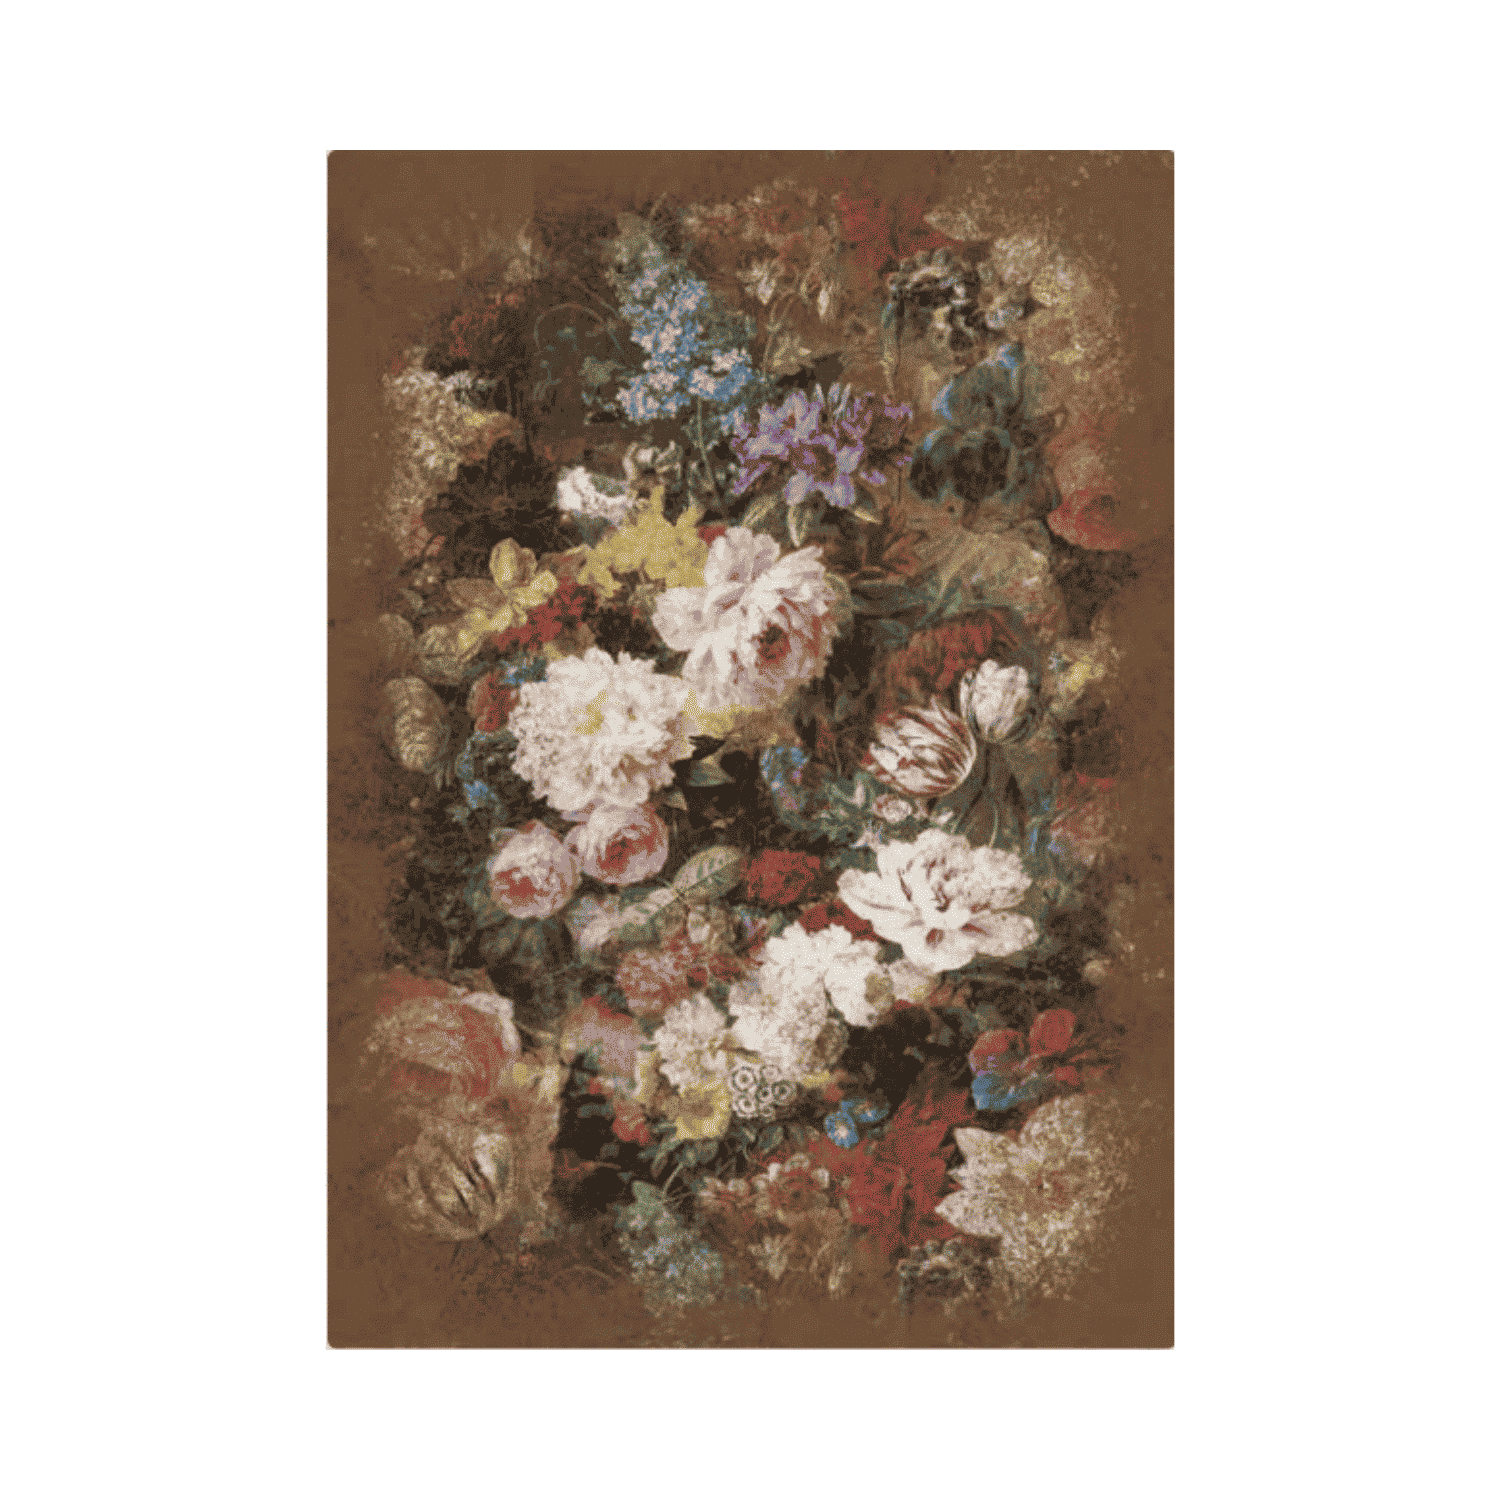 bosschaert-tabacco-tappeto-arredo-emozioni-artista-bouquet-multicolor-fiorato-marrone-classico-front